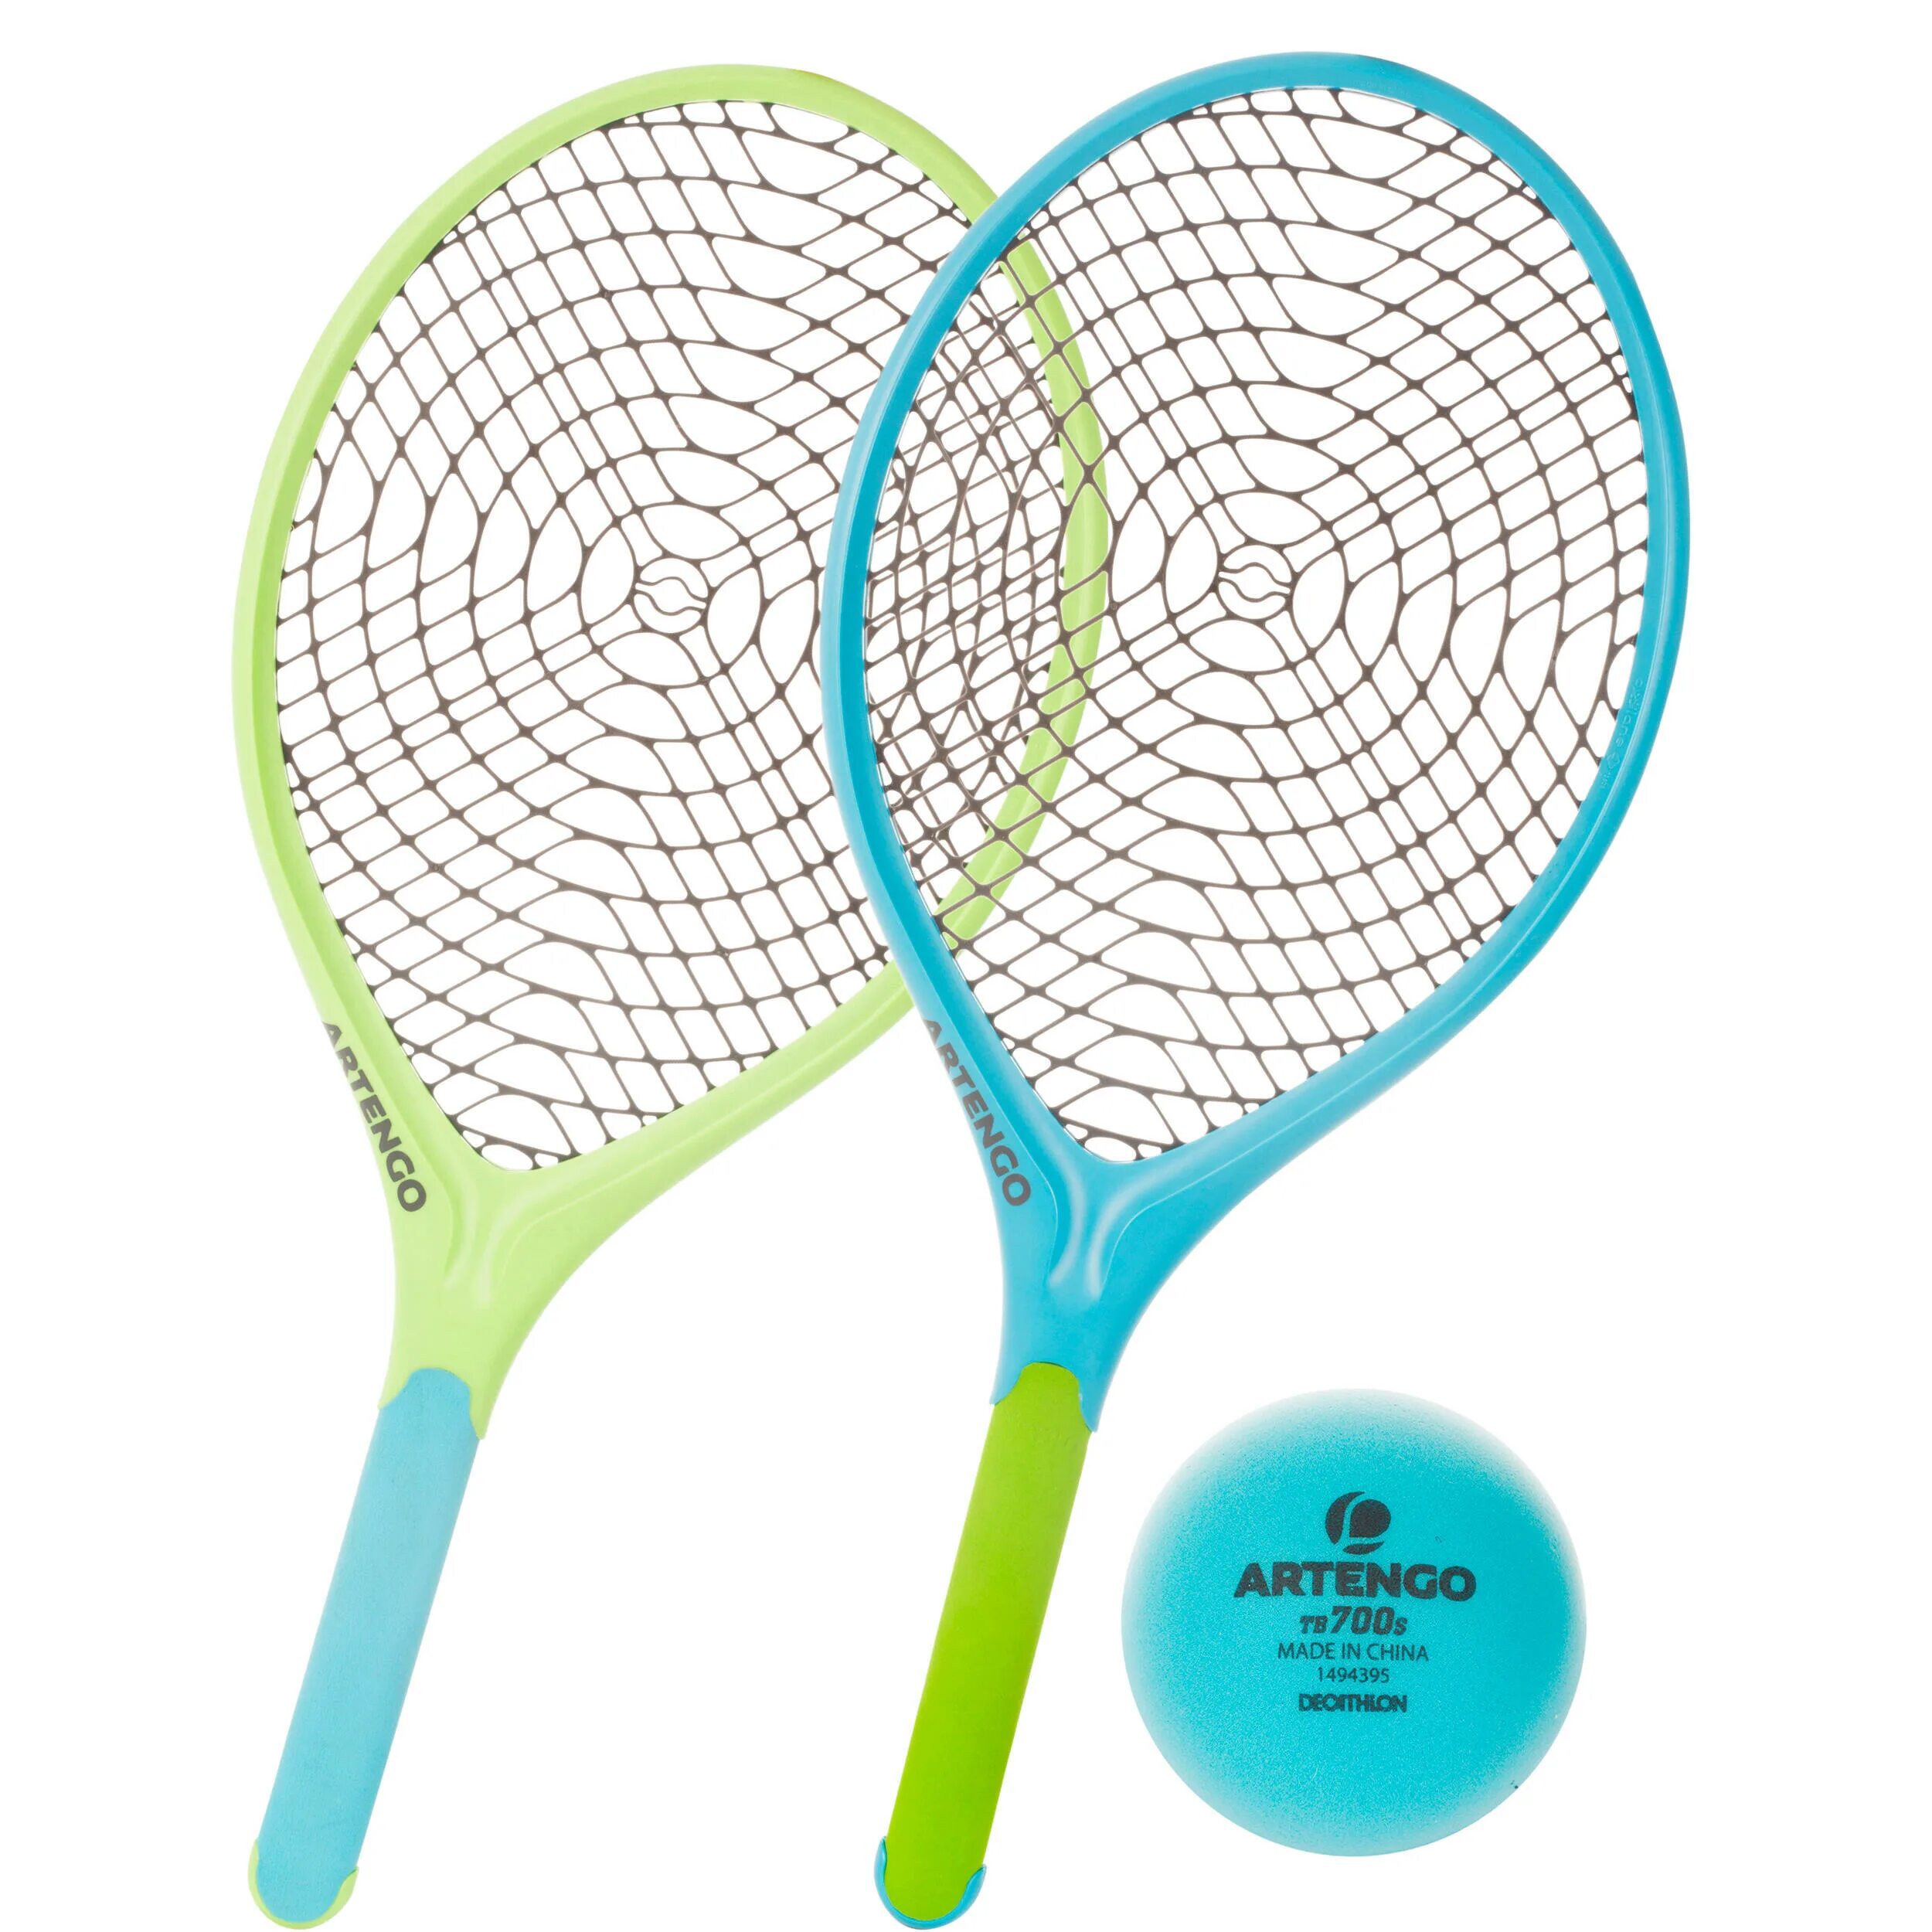 ARTENGO ракетки для большого тенниса. ARTENGO набор для тенниса. ARTENGO ракетки для настольного тенниса. Теннисная ракетка Декатлон. Ракетки для тенниса набор